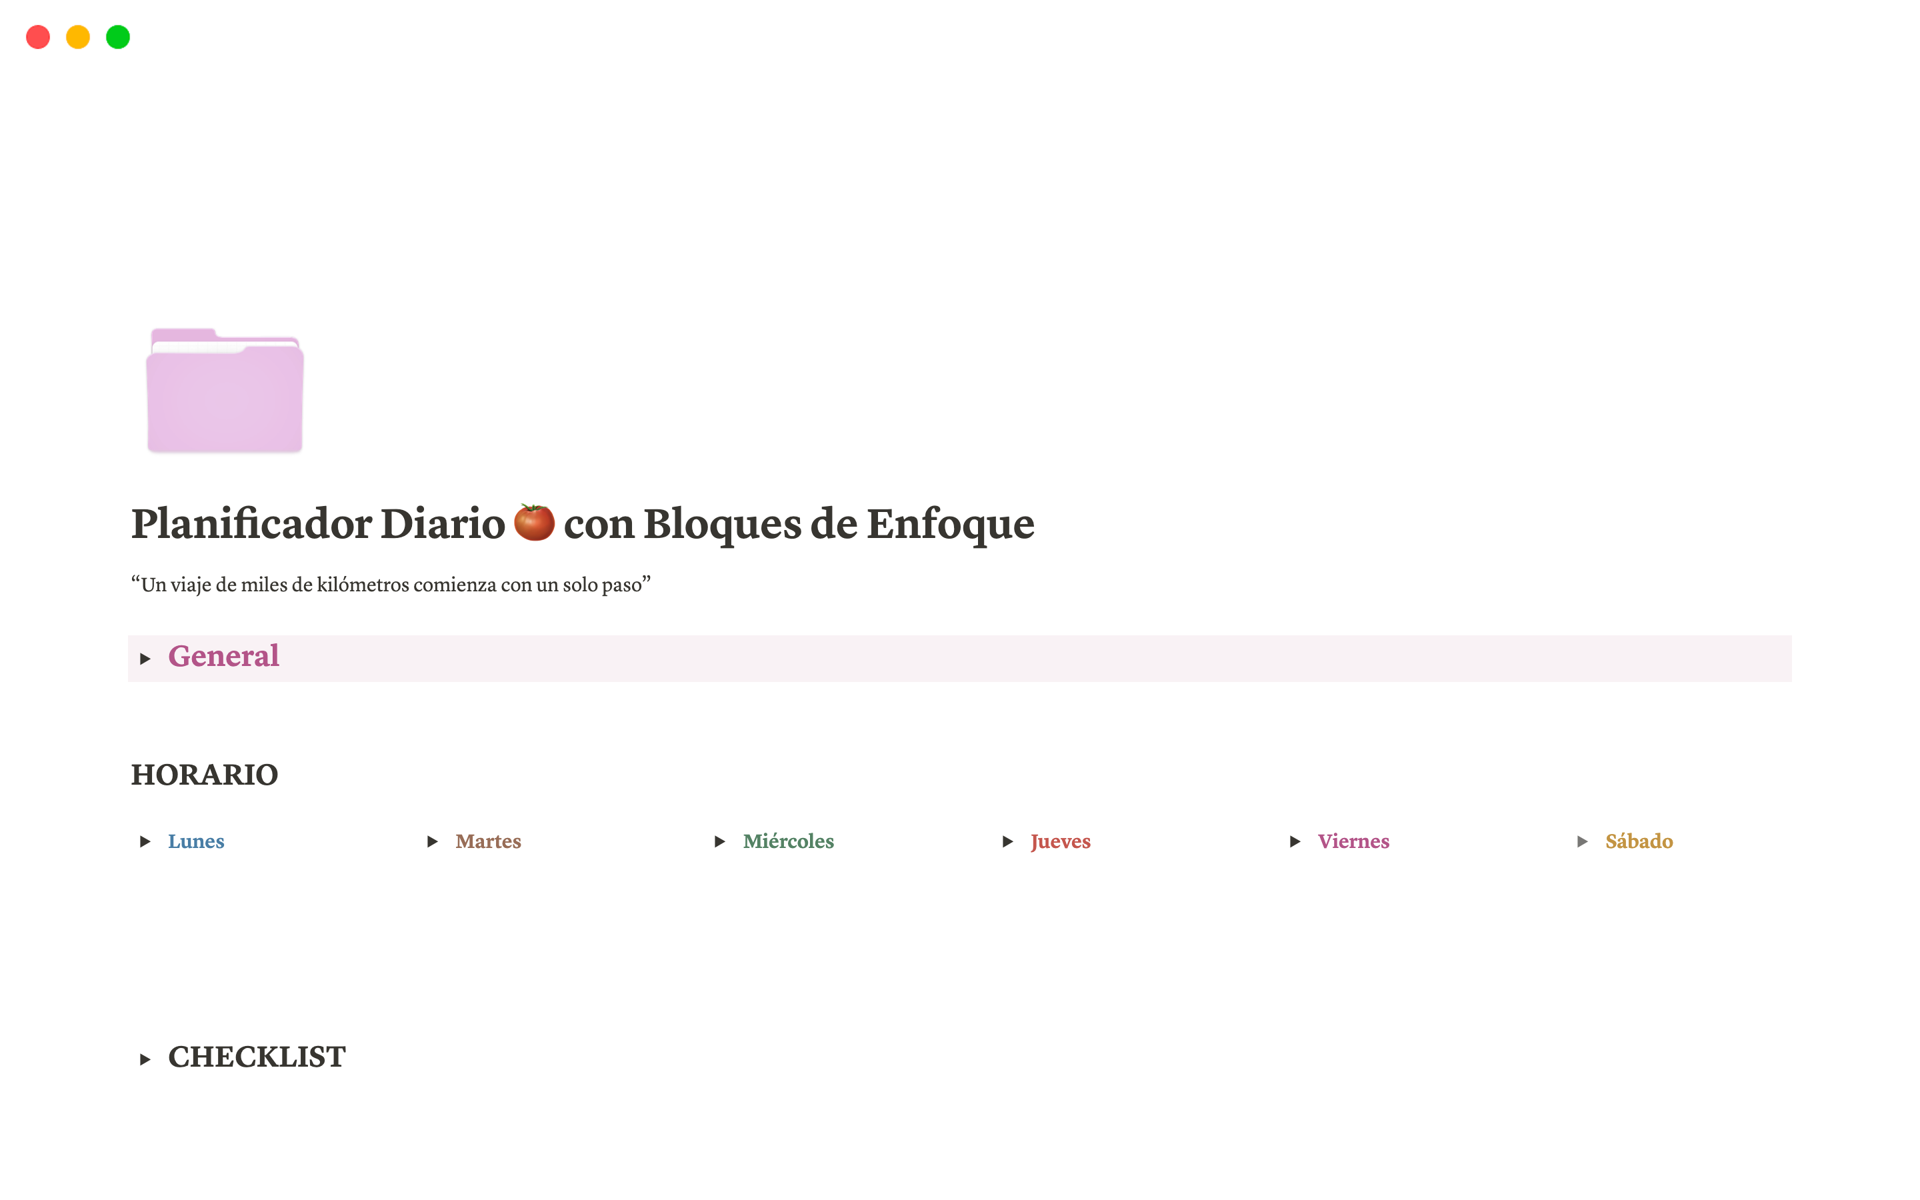 A template preview for Planificador Diario 🍅 con Bloques de Enfoque